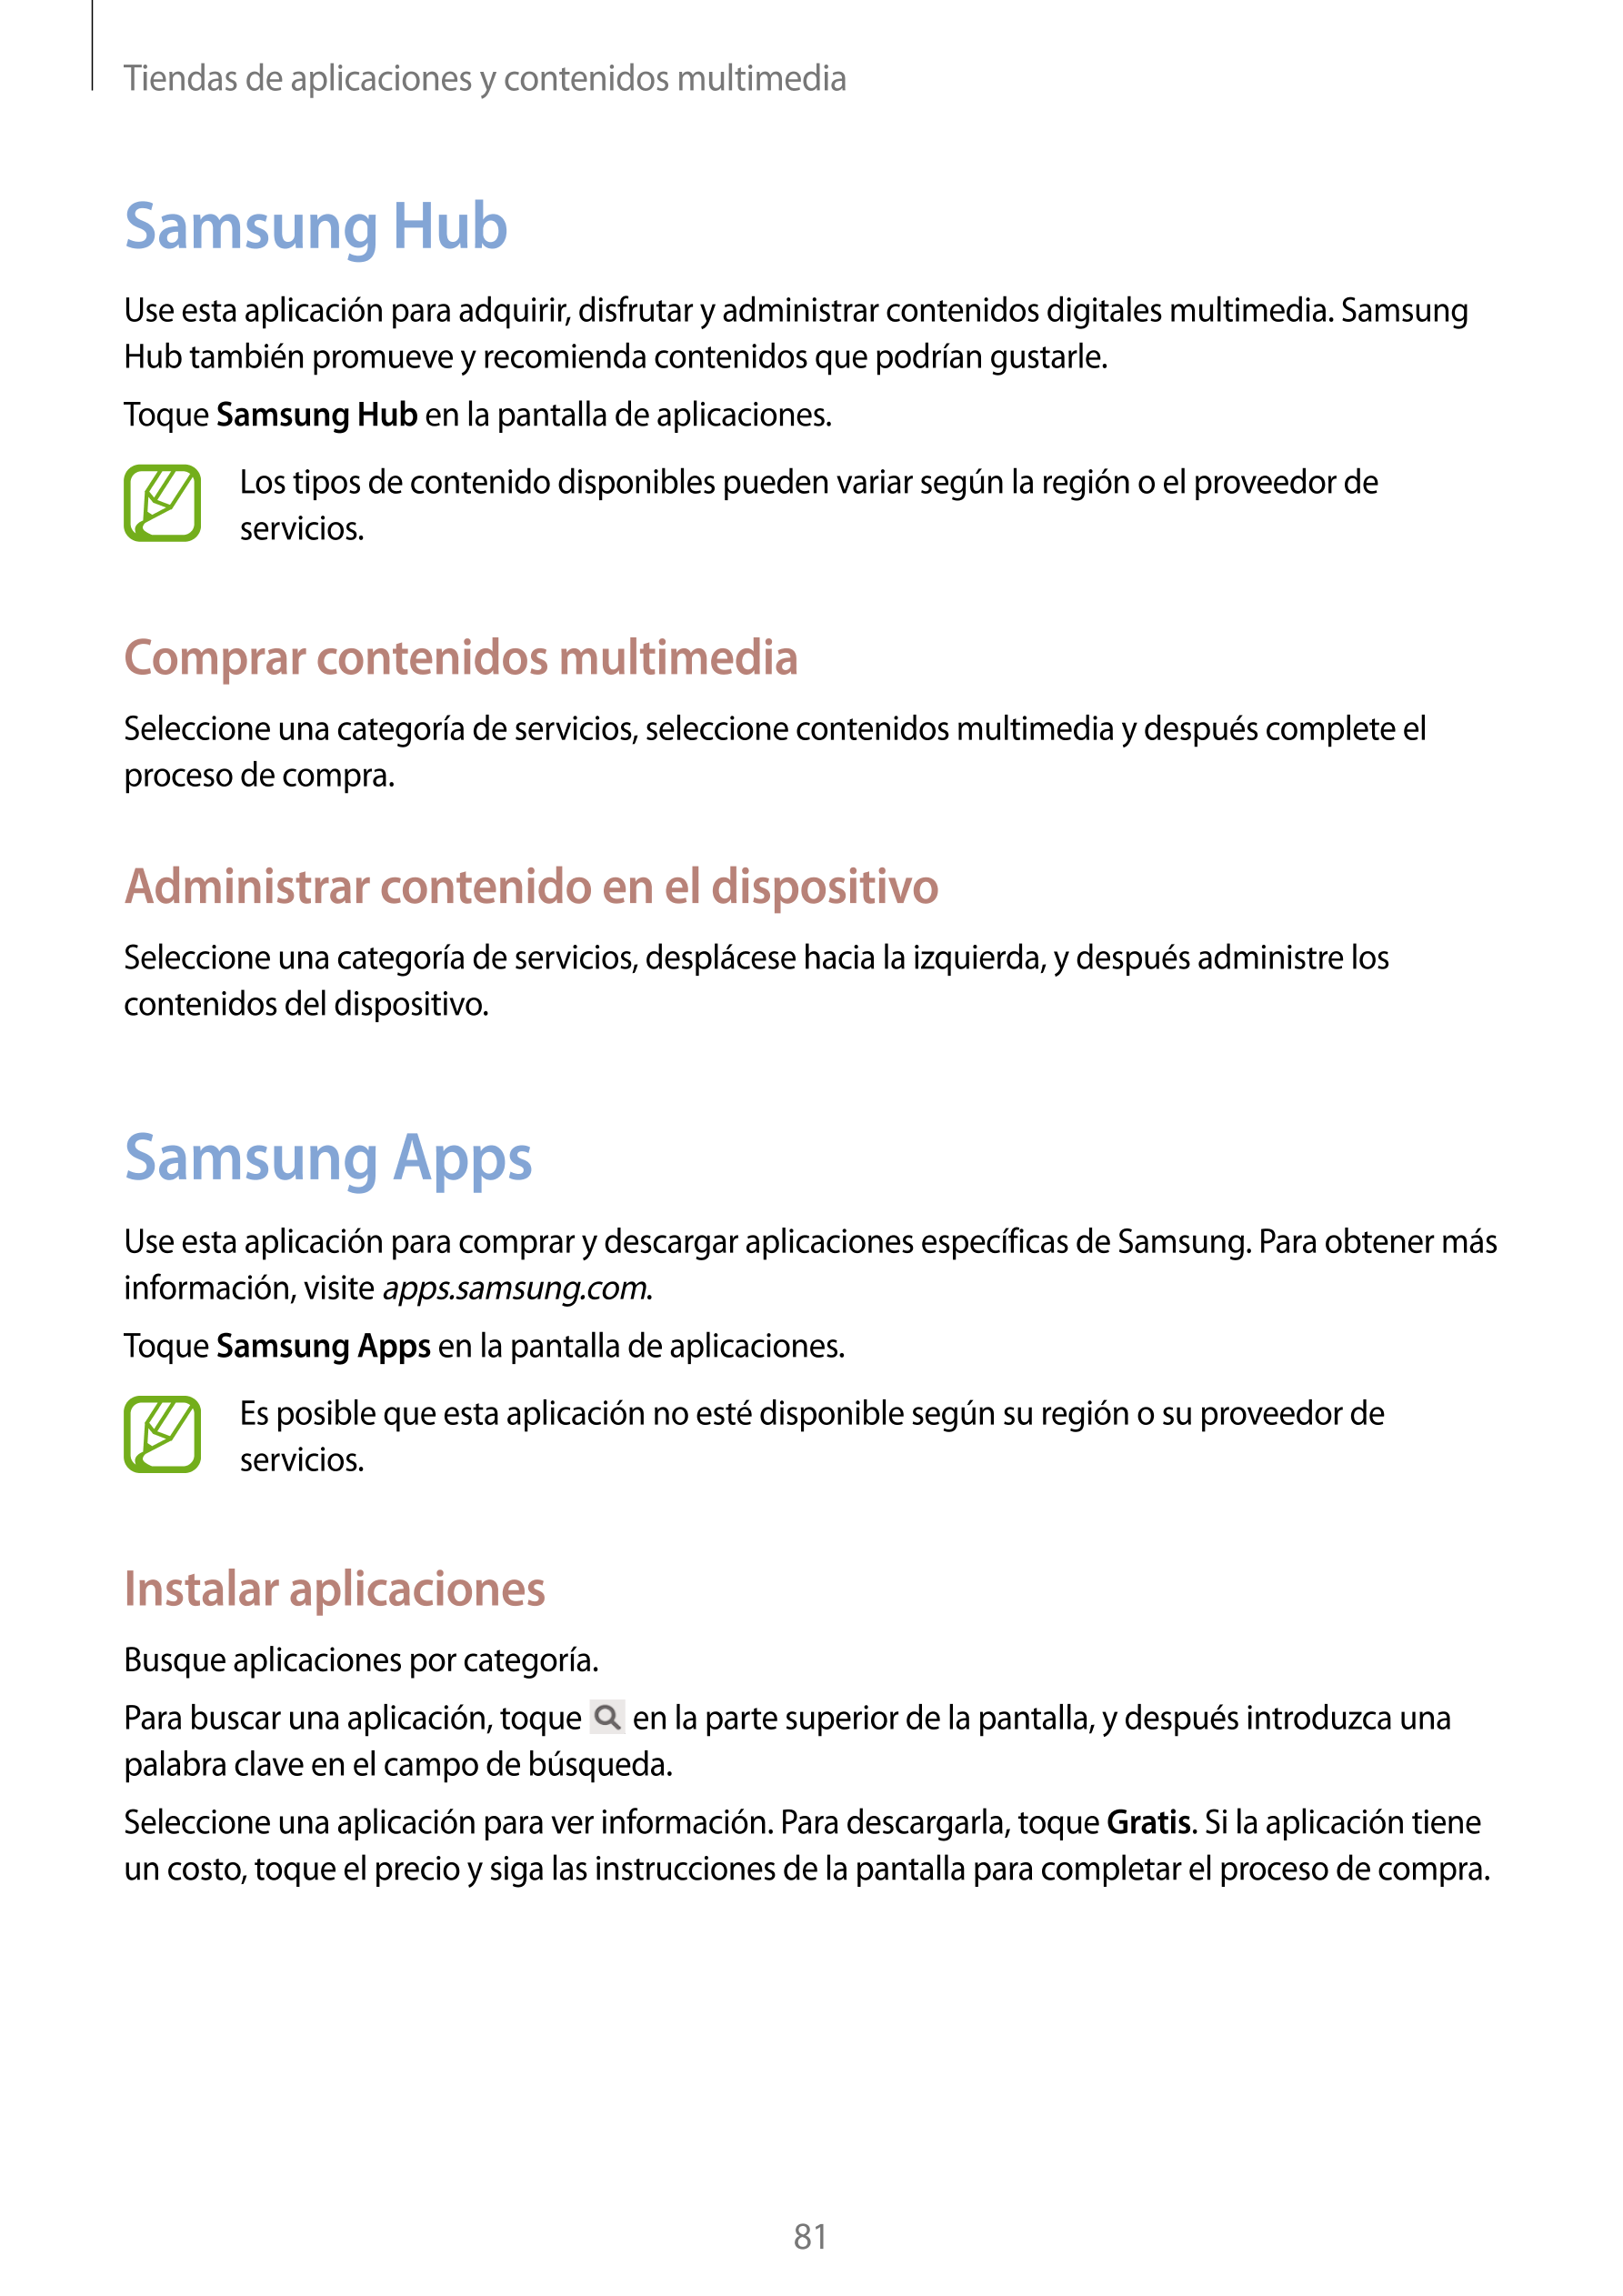 Tiendas de aplicaciones y contenidos multimedia
Samsung Hub
Use esta aplicación para adquirir, disfrutar y administrar contenido